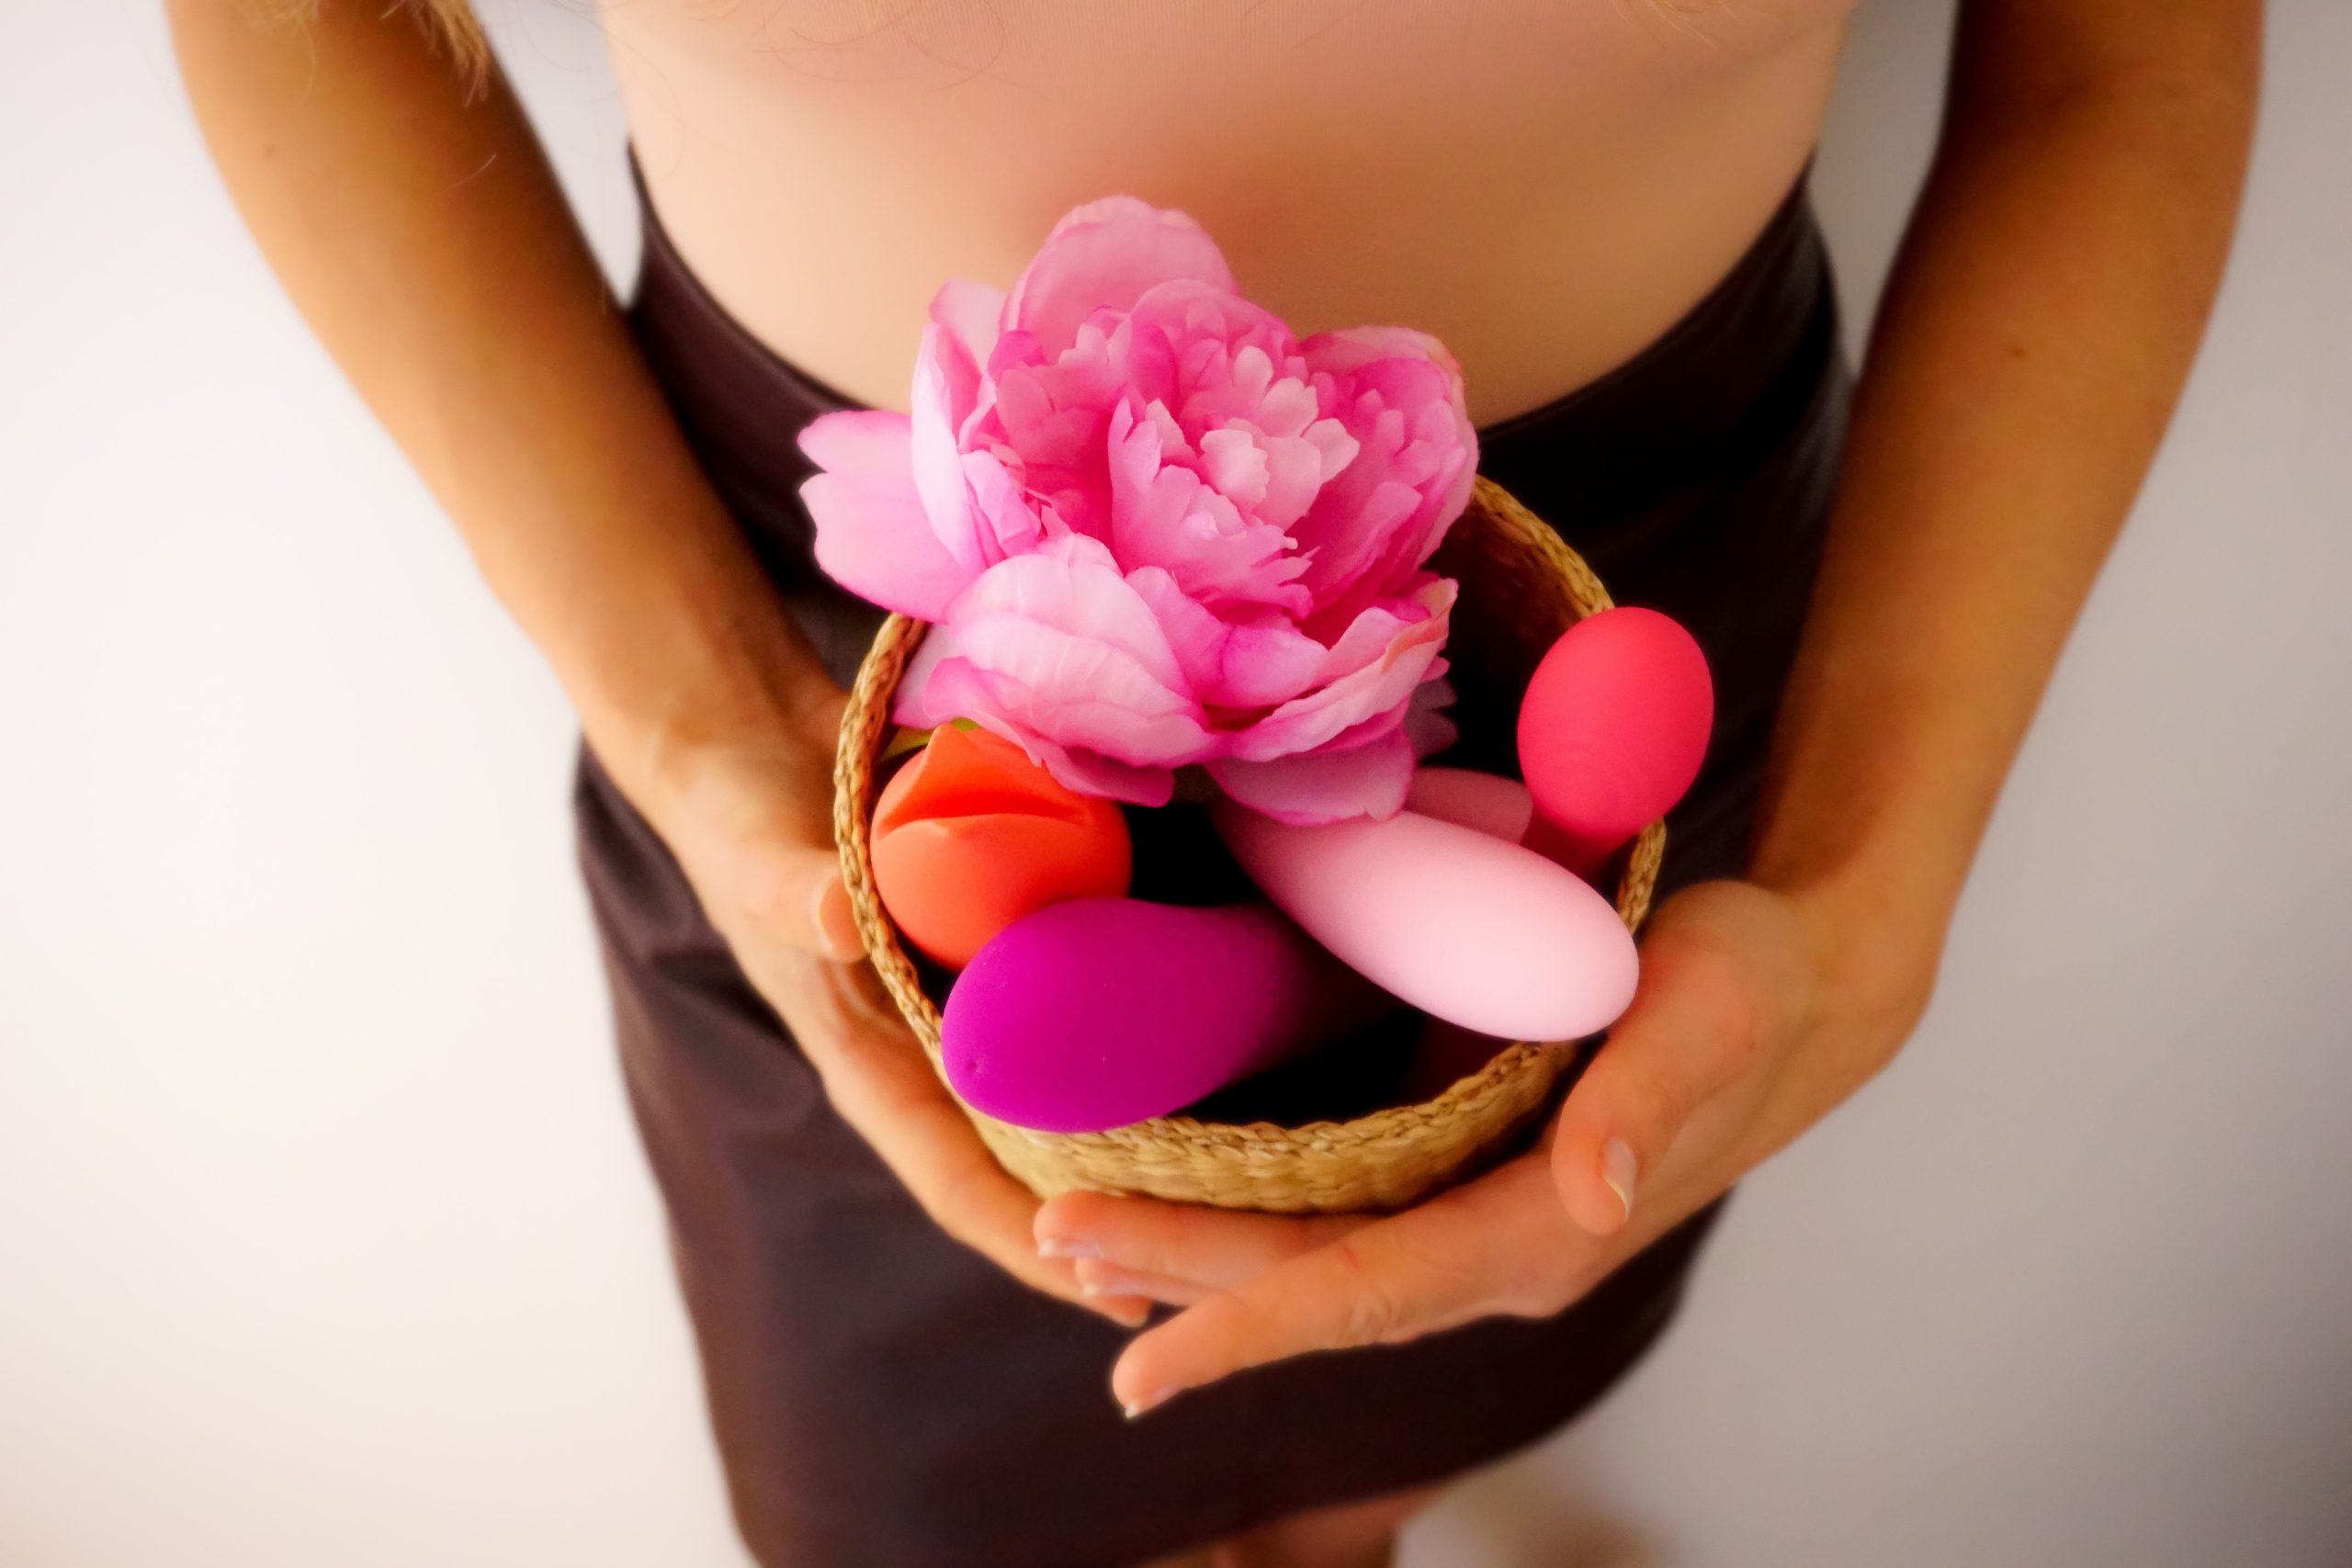 Brinquedos eróticos e os benefícios para relação e saúde